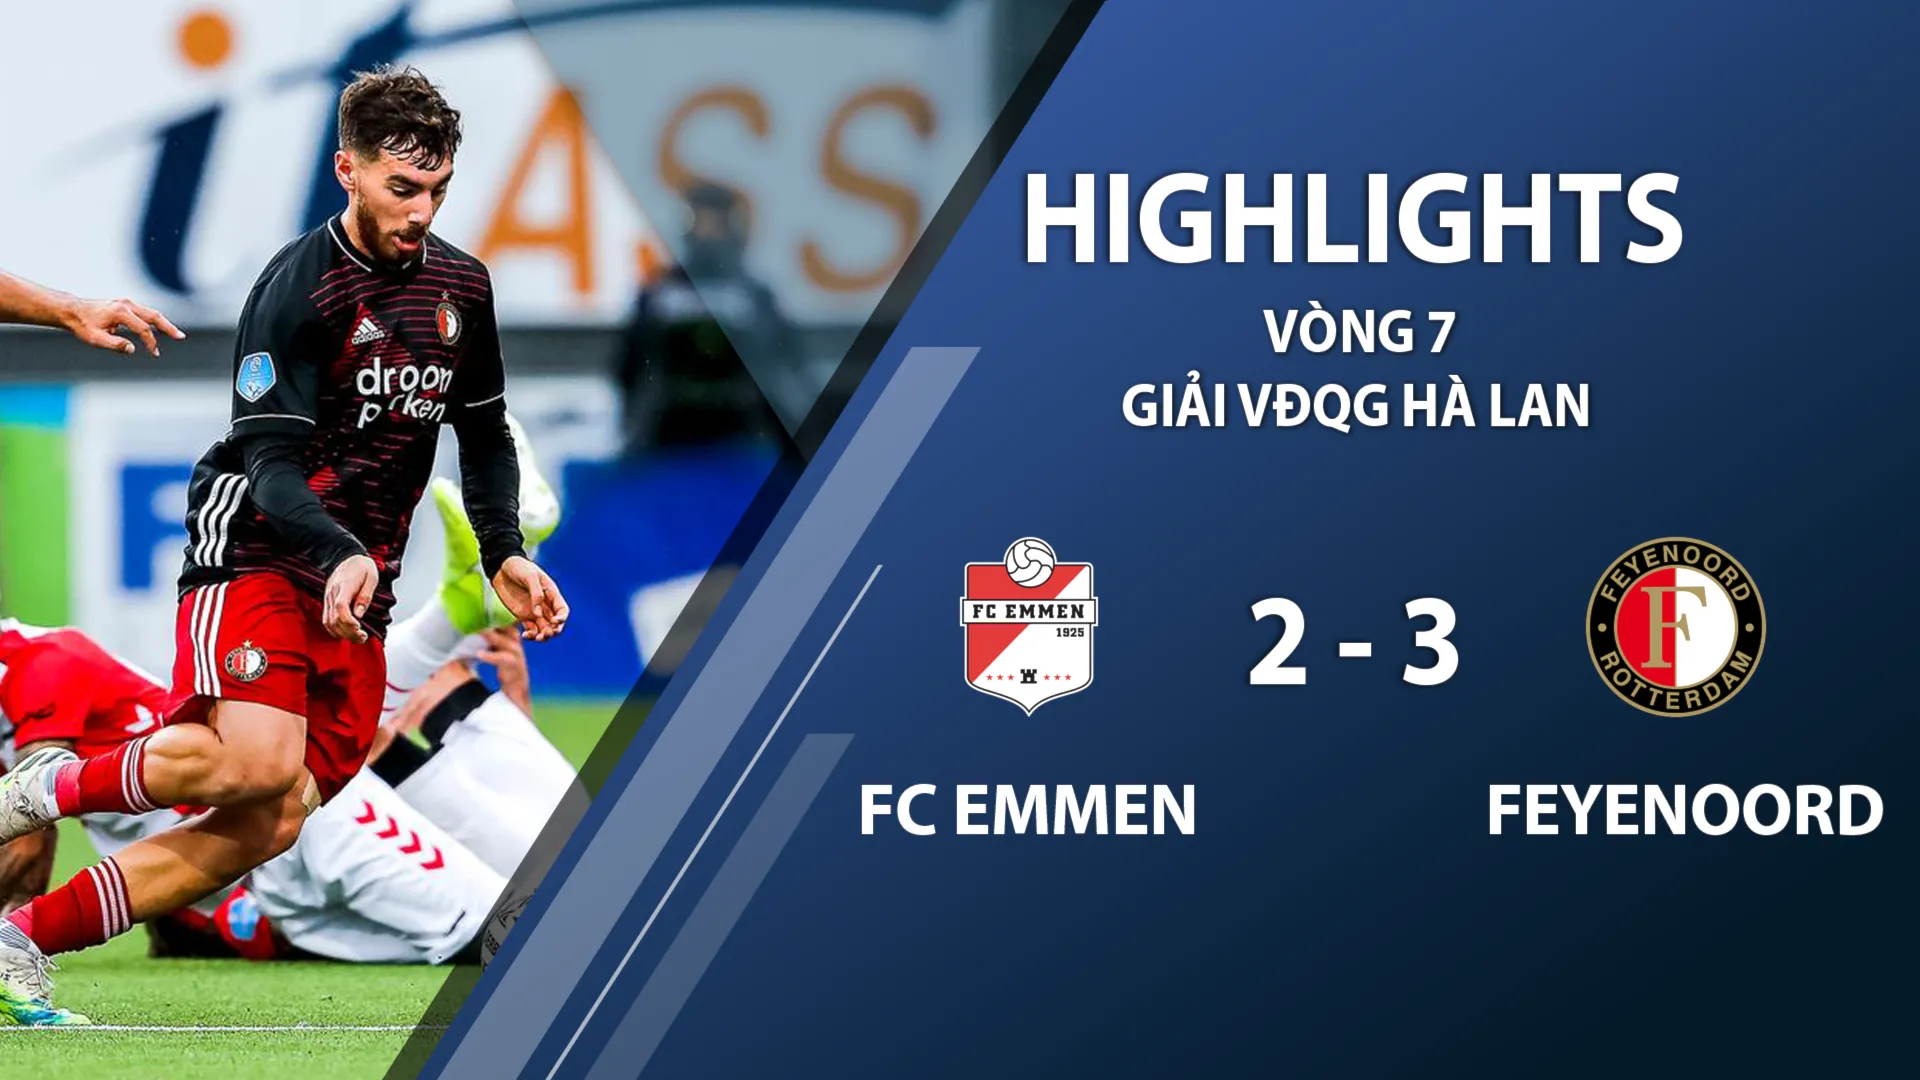 Highlights FC Emmen 2-3 Feyenoord (vòng 7 giải VĐQG Hà Lan 2020/21)